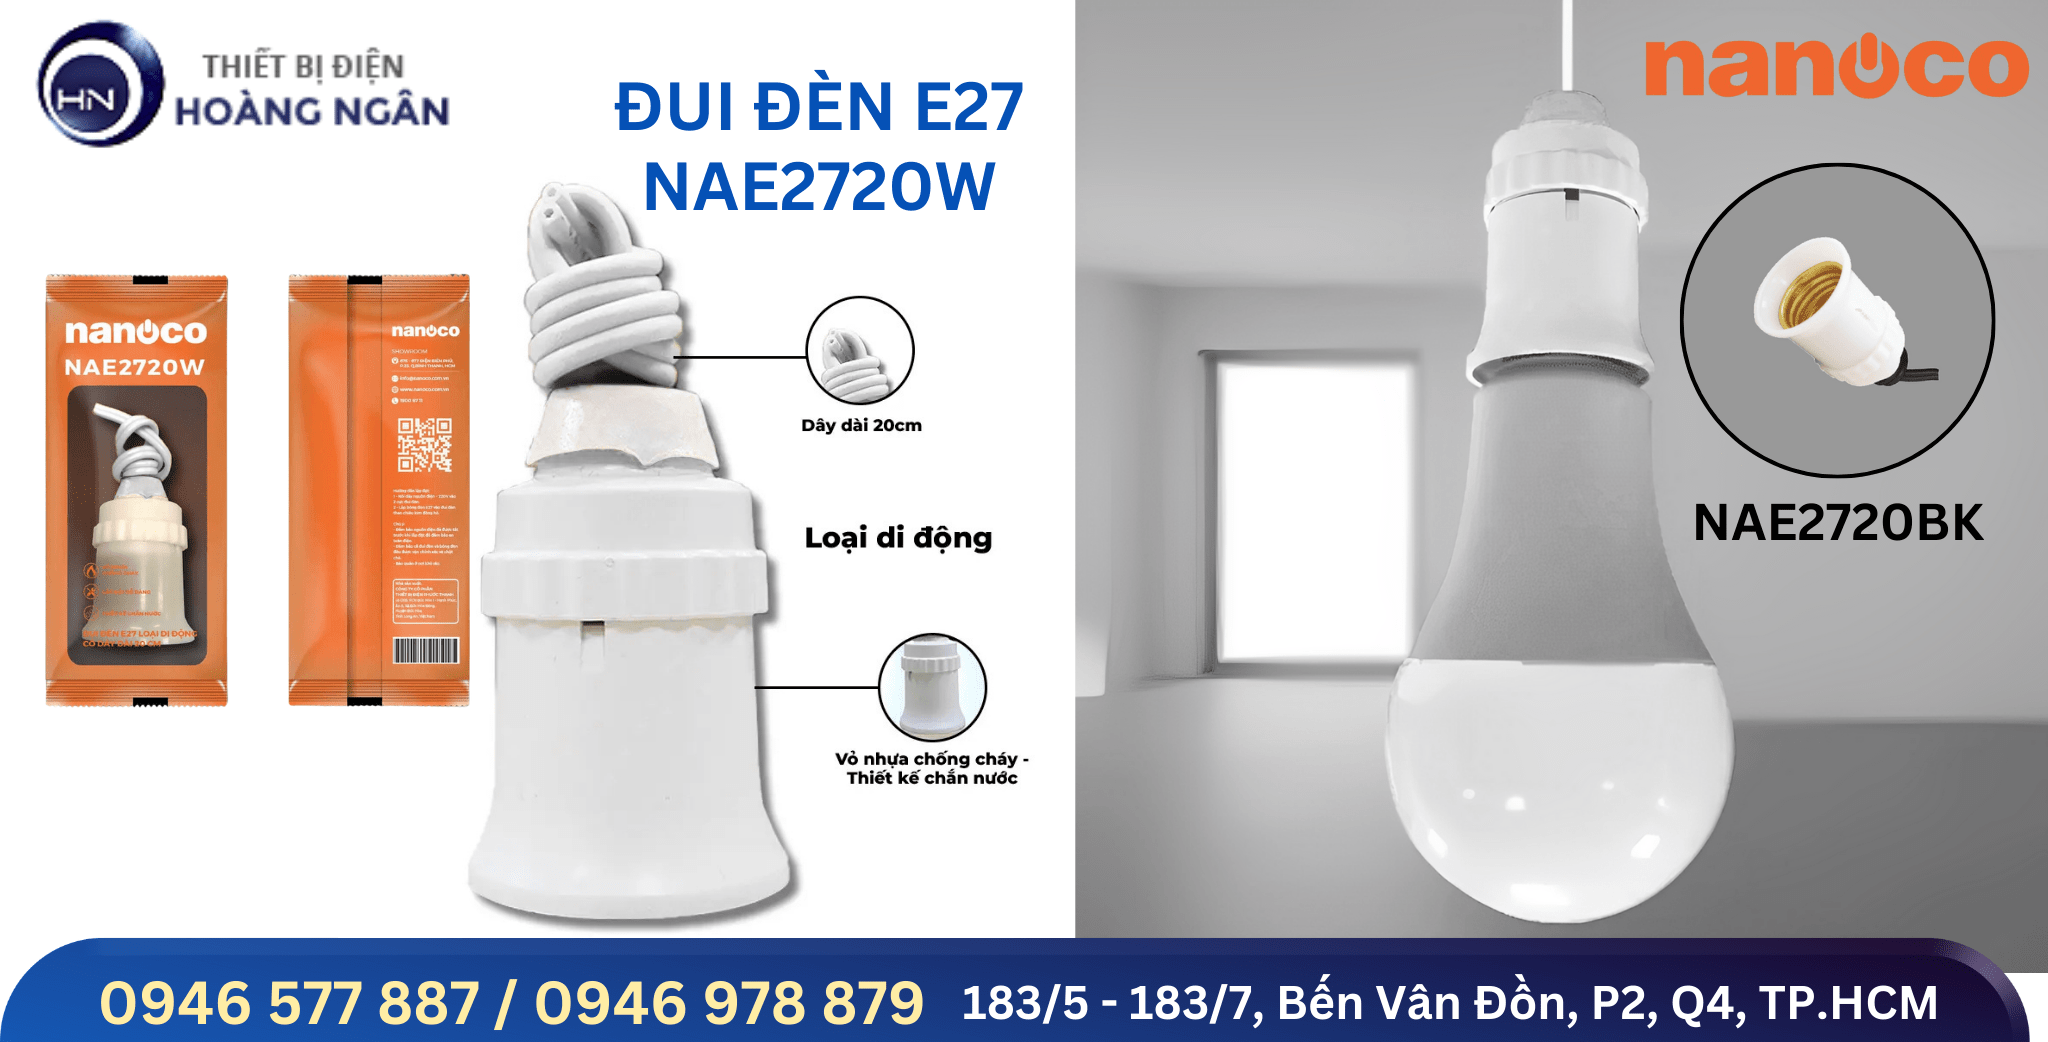 Đui đèn E27 Nanoco NAE2720W